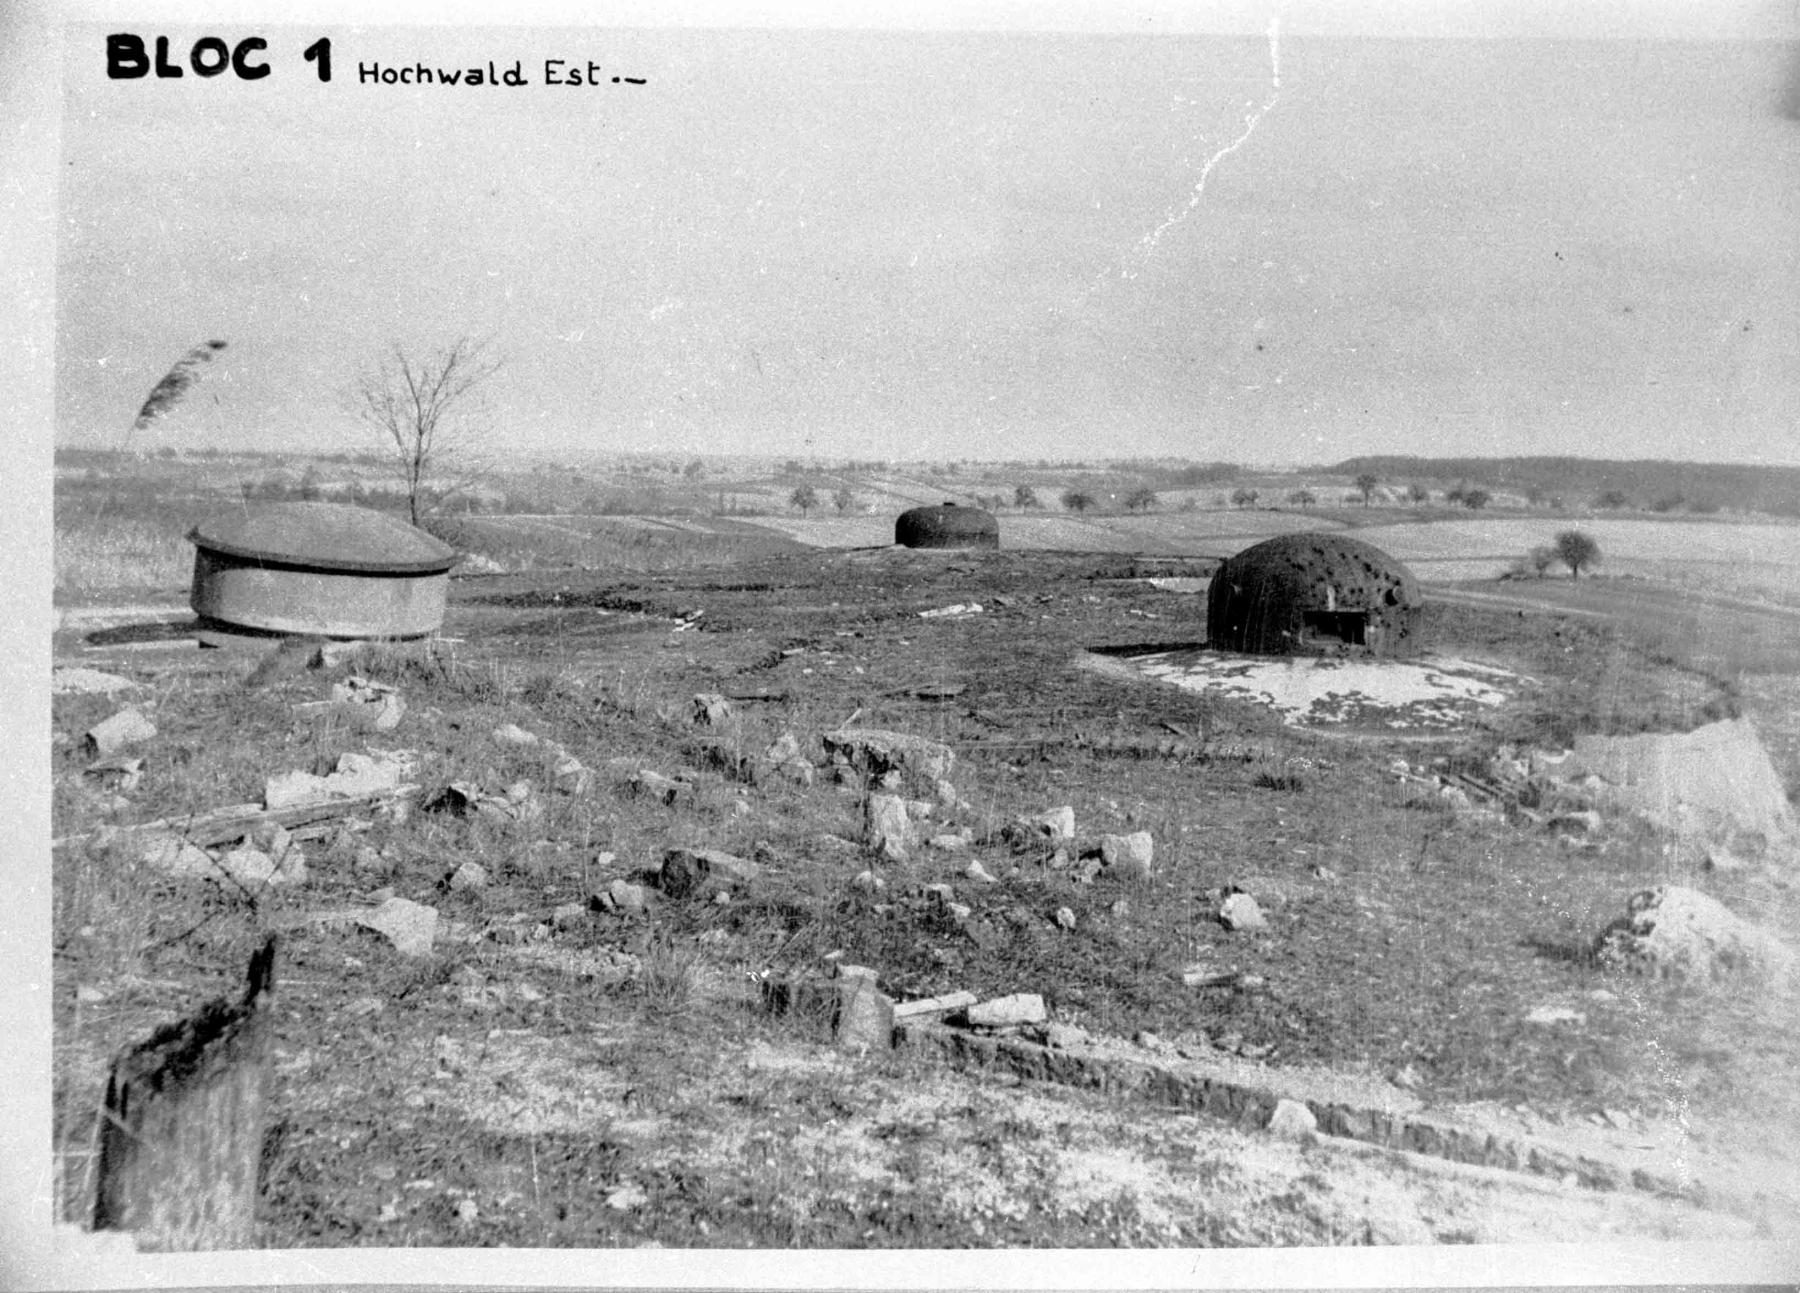 Ligne Maginot - HOCHWALD - (Ouvrage d'artillerie) - Bloc 1
La tourelle de 135, sortie de son logement